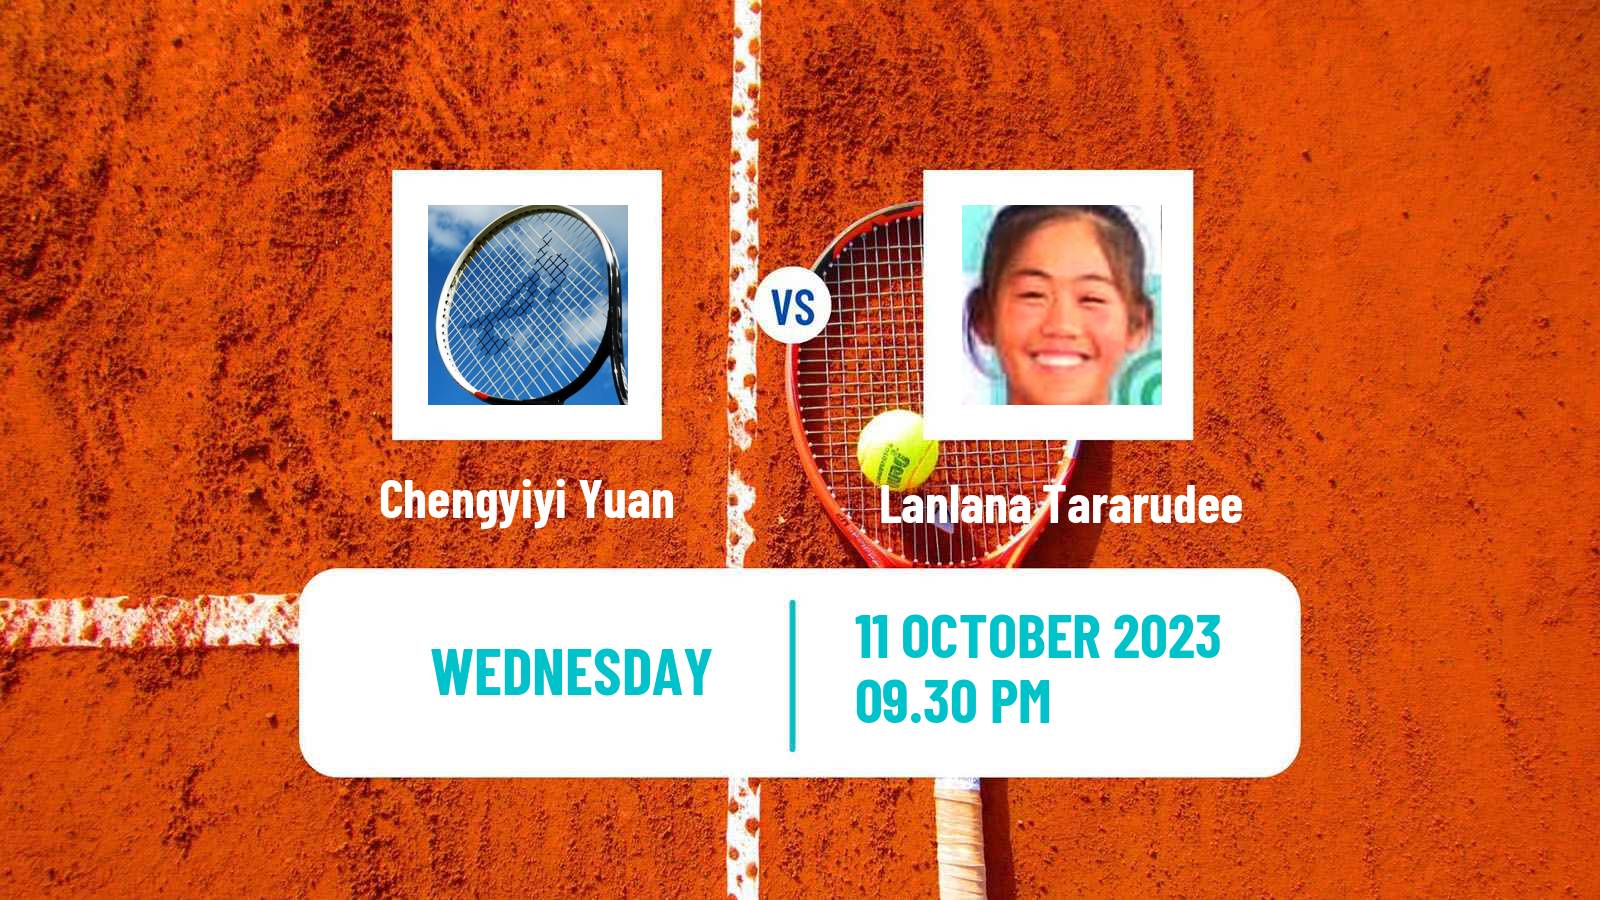 Tennis ITF W40 Shenzhen Women Chengyiyi Yuan - Lanlana Tararudee